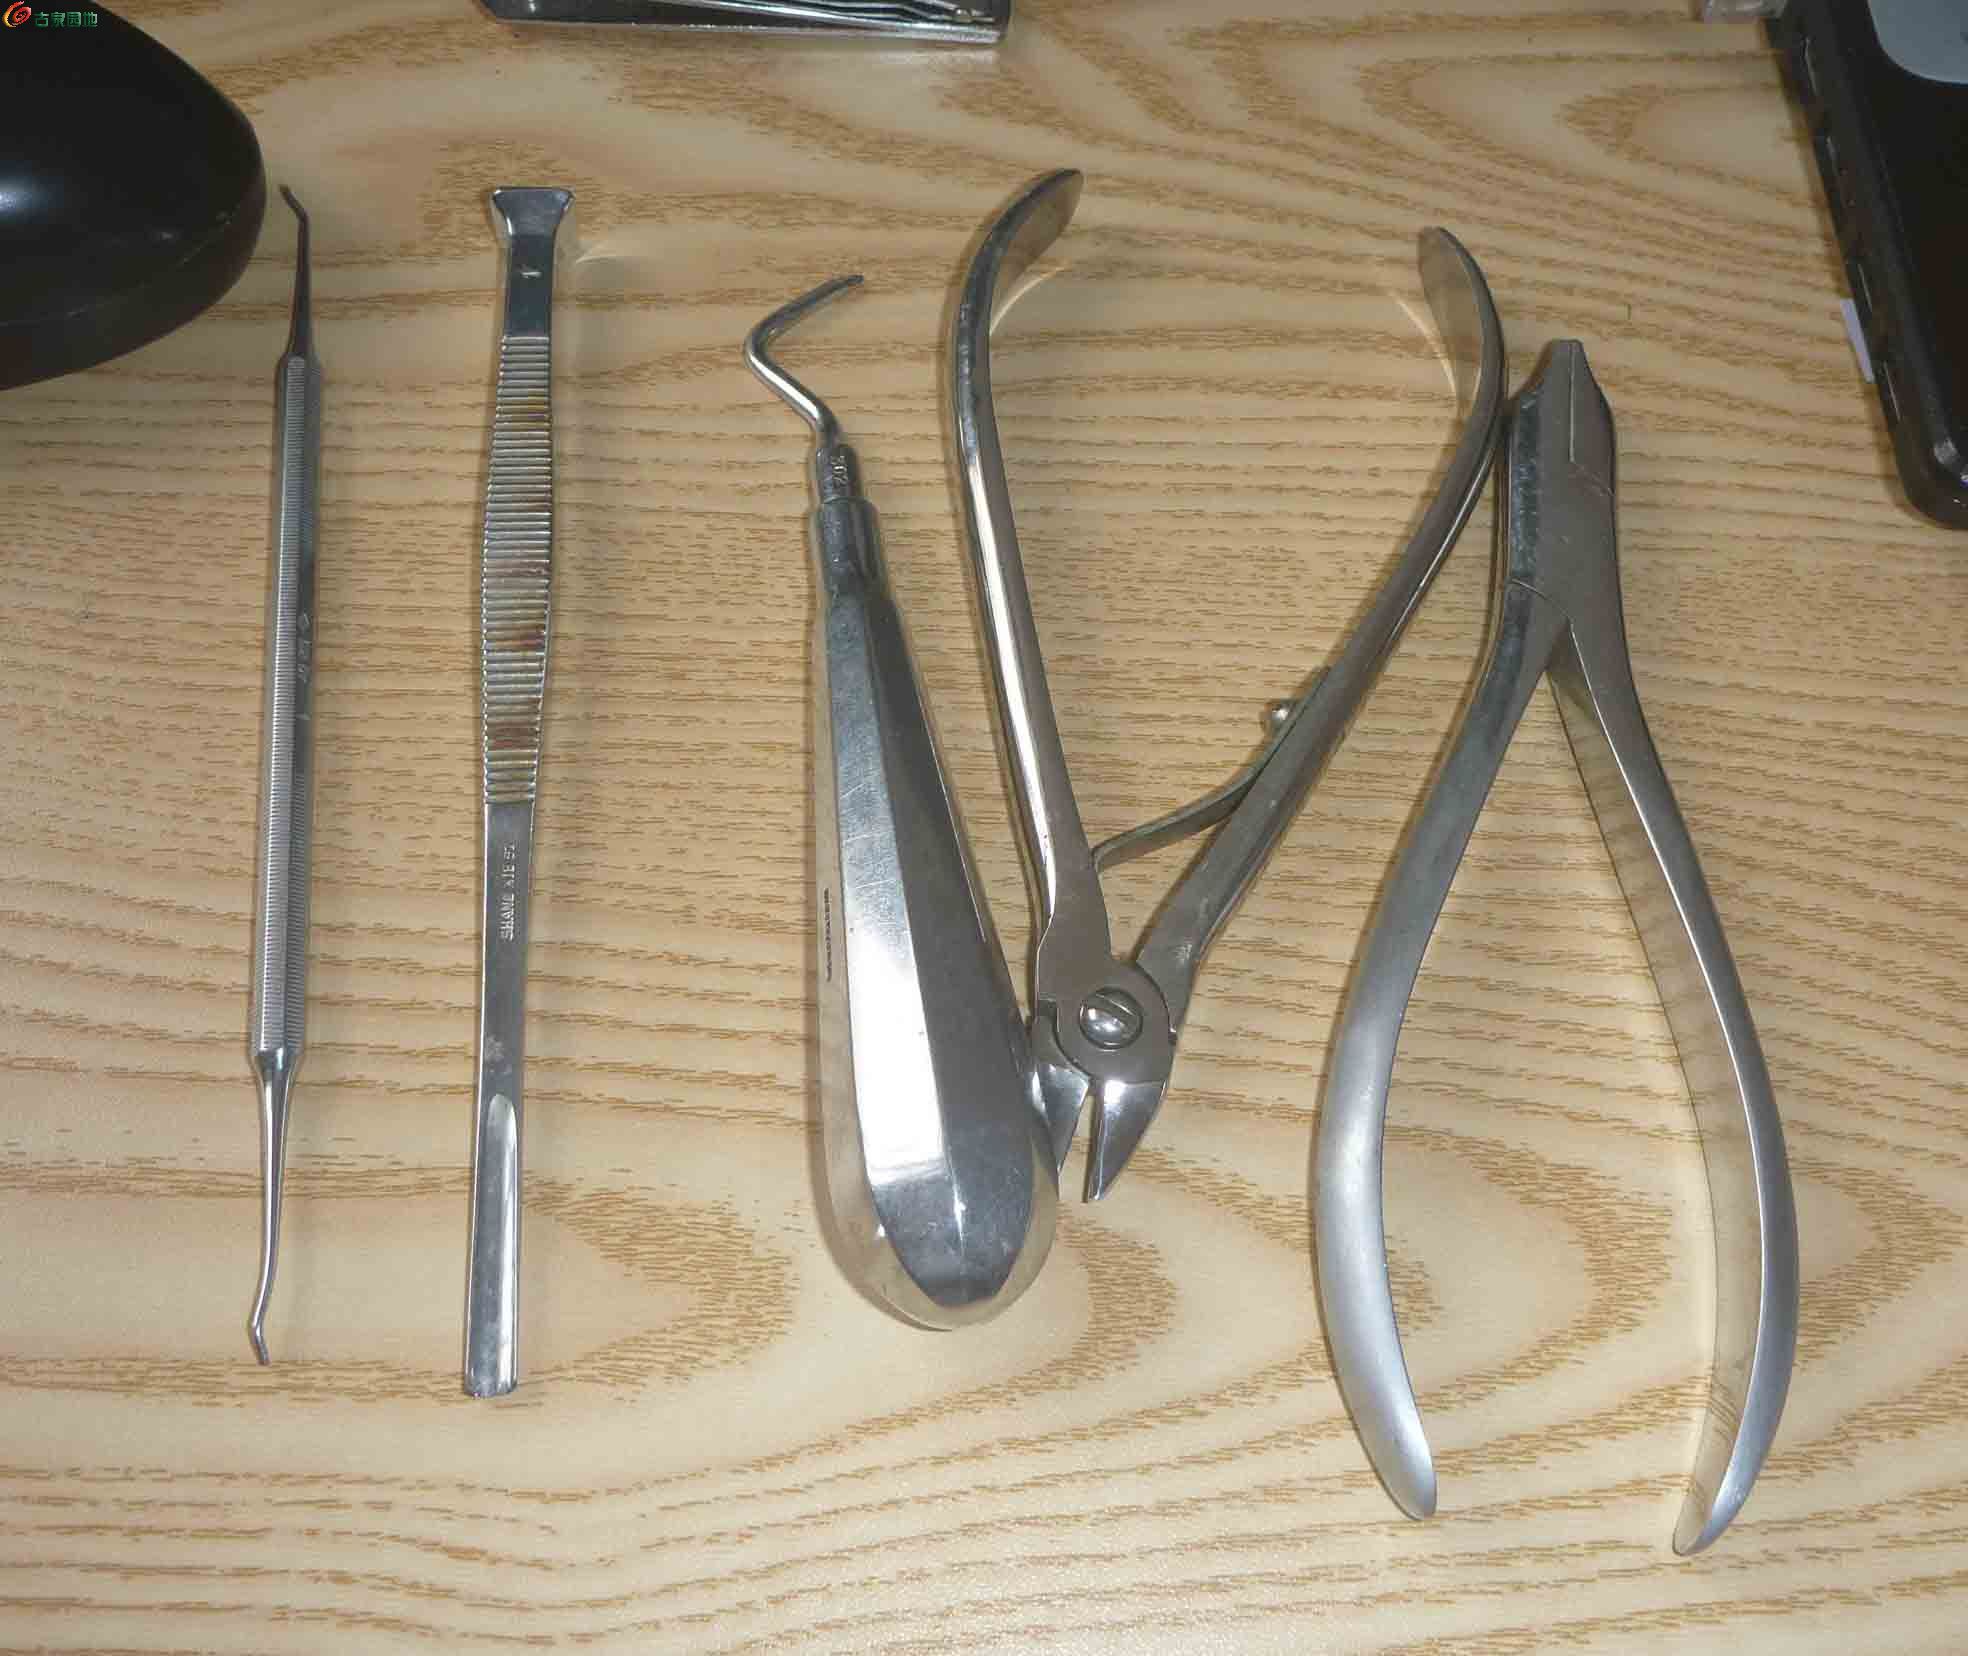 老牙医的工具一套,这些工具用于雕刻或做手工都不错